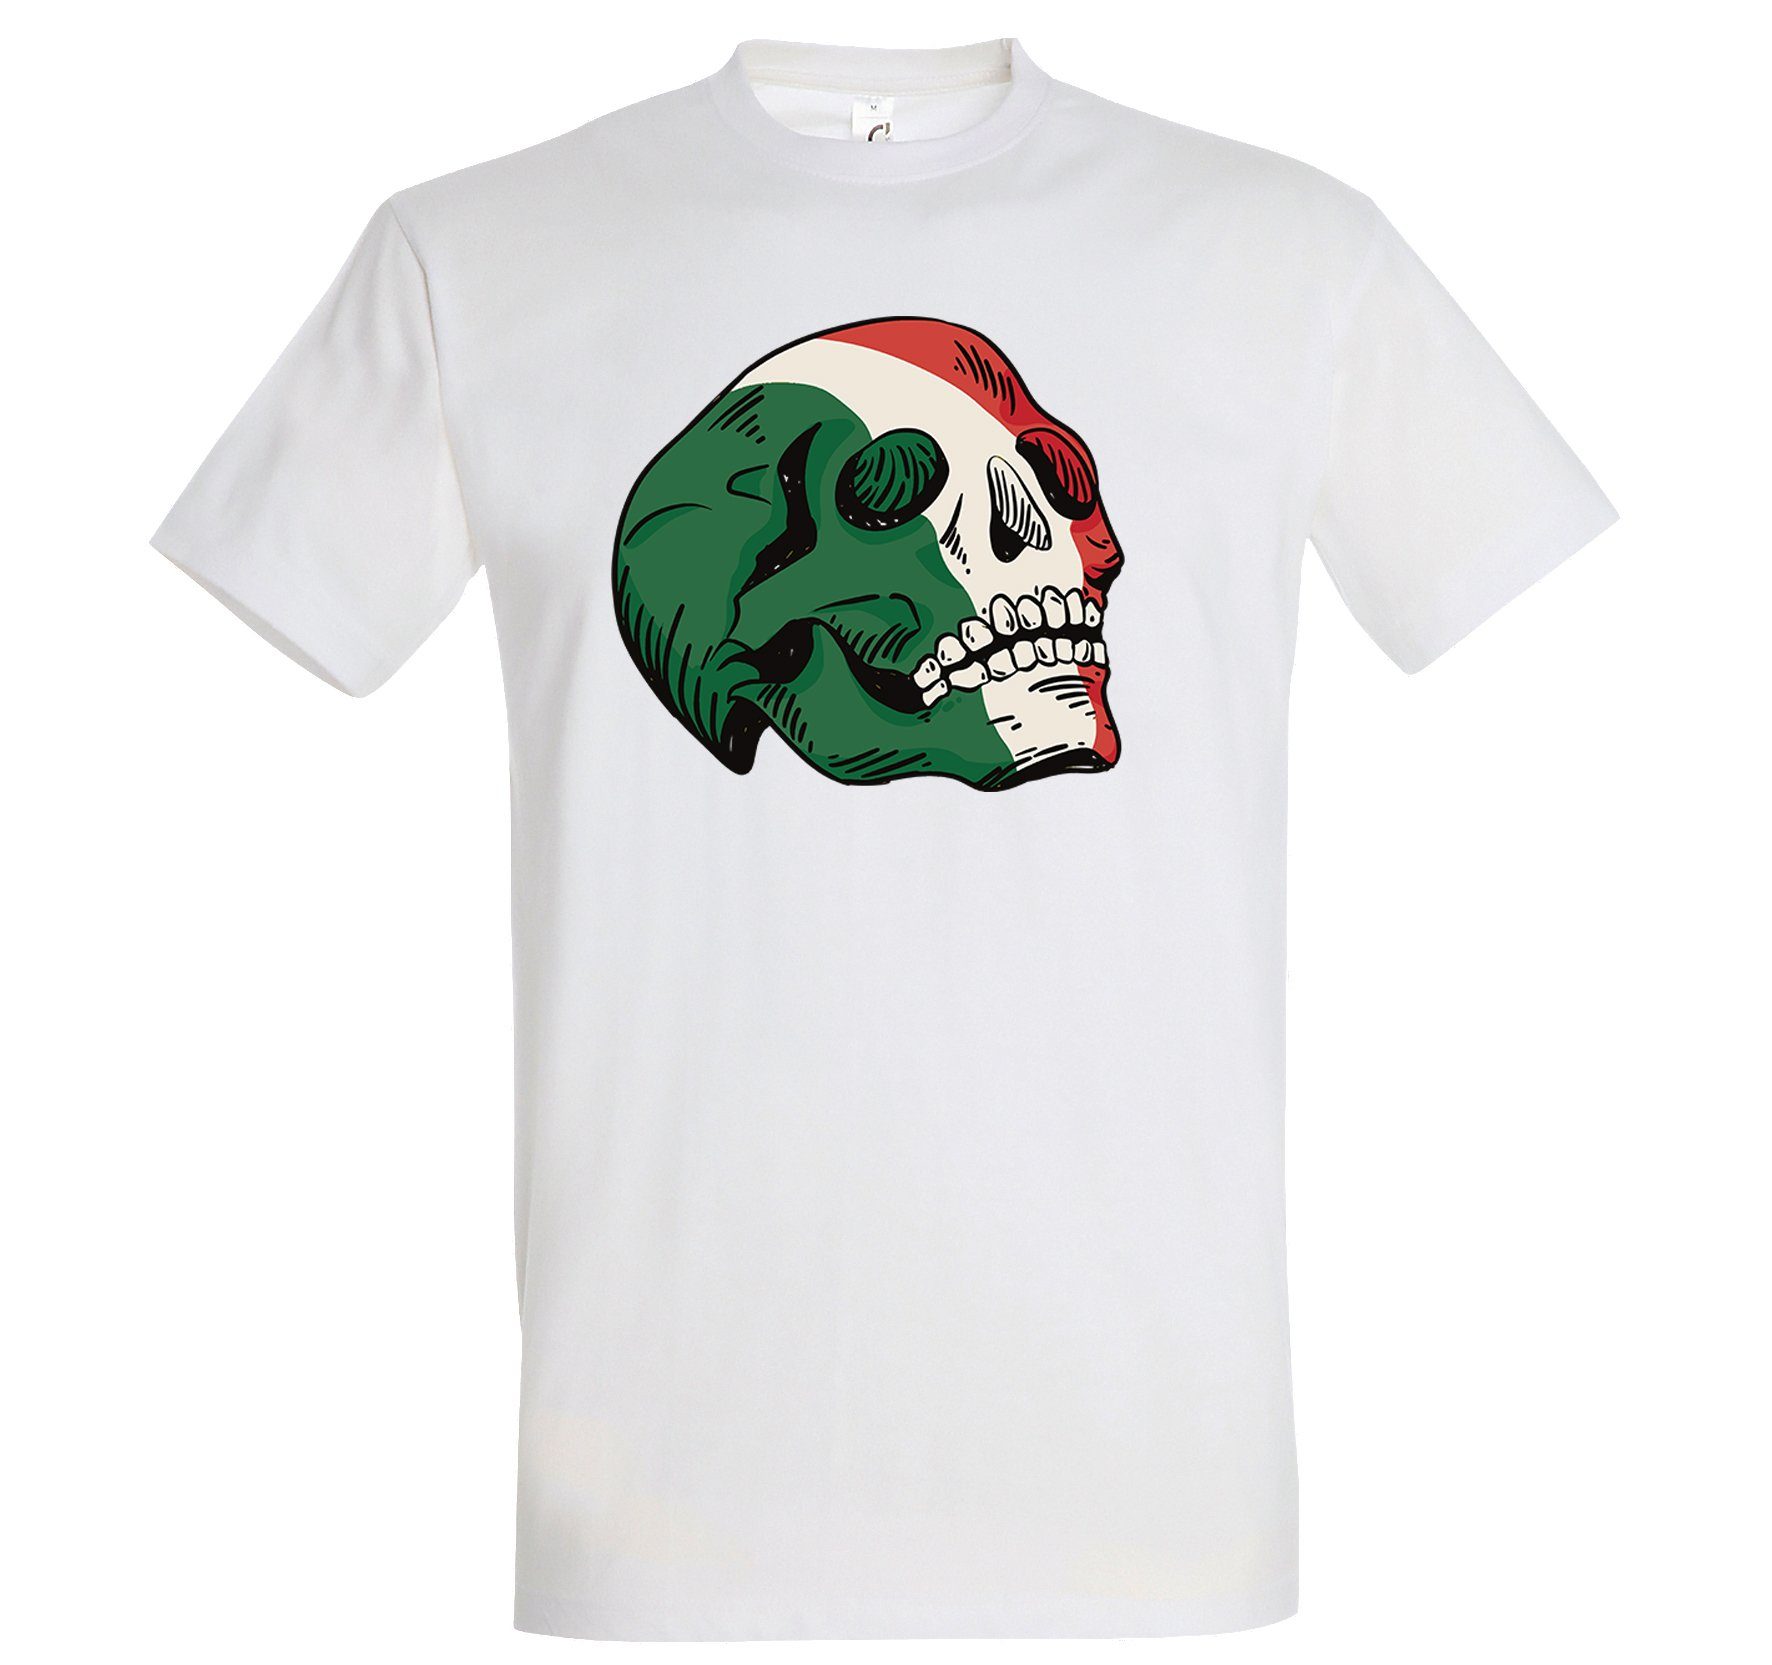 Italy Shirt T-Shirt trendigem Weiß Youth Herren Frontprint Designz mit Schädel